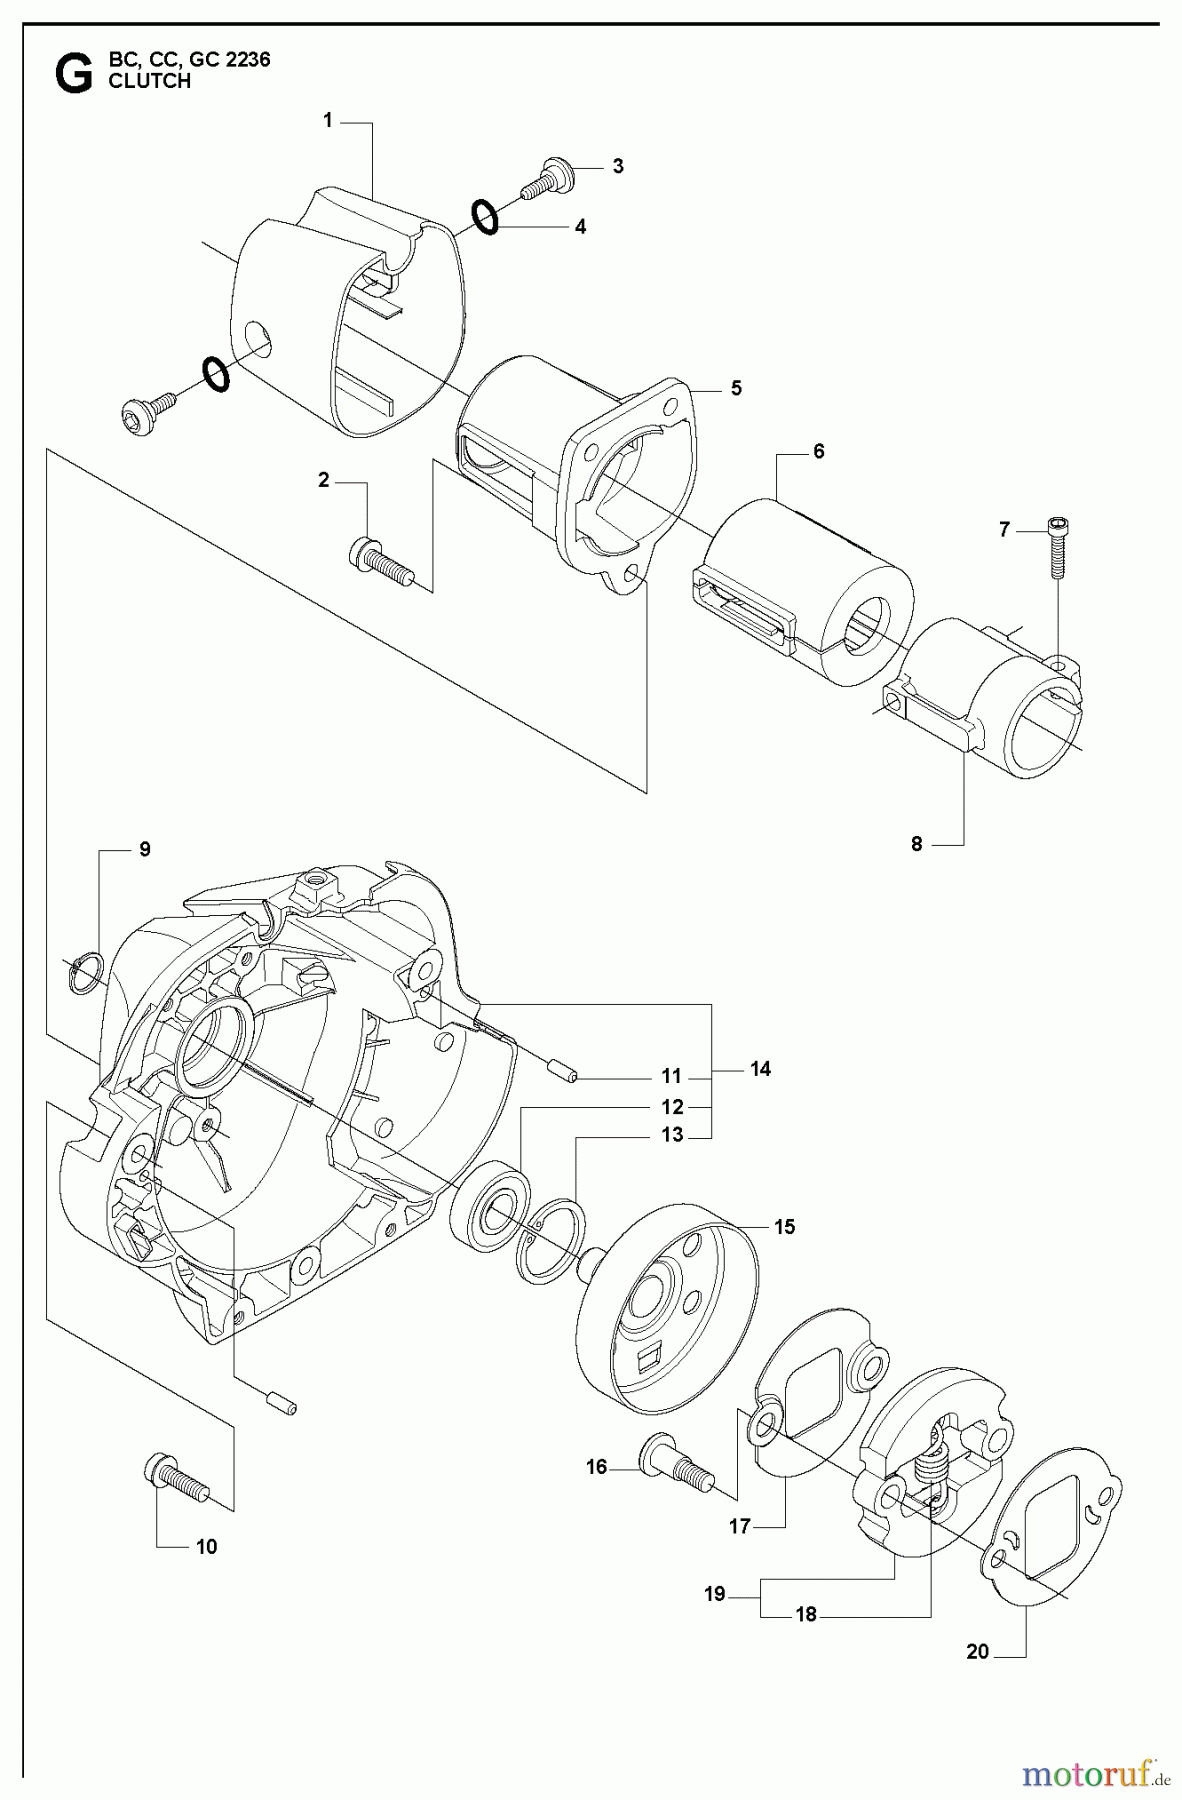  Jonsered Motorsensen, Trimmer BC2236 - Jonsered Brushcutter (2010-11) CLUTCH